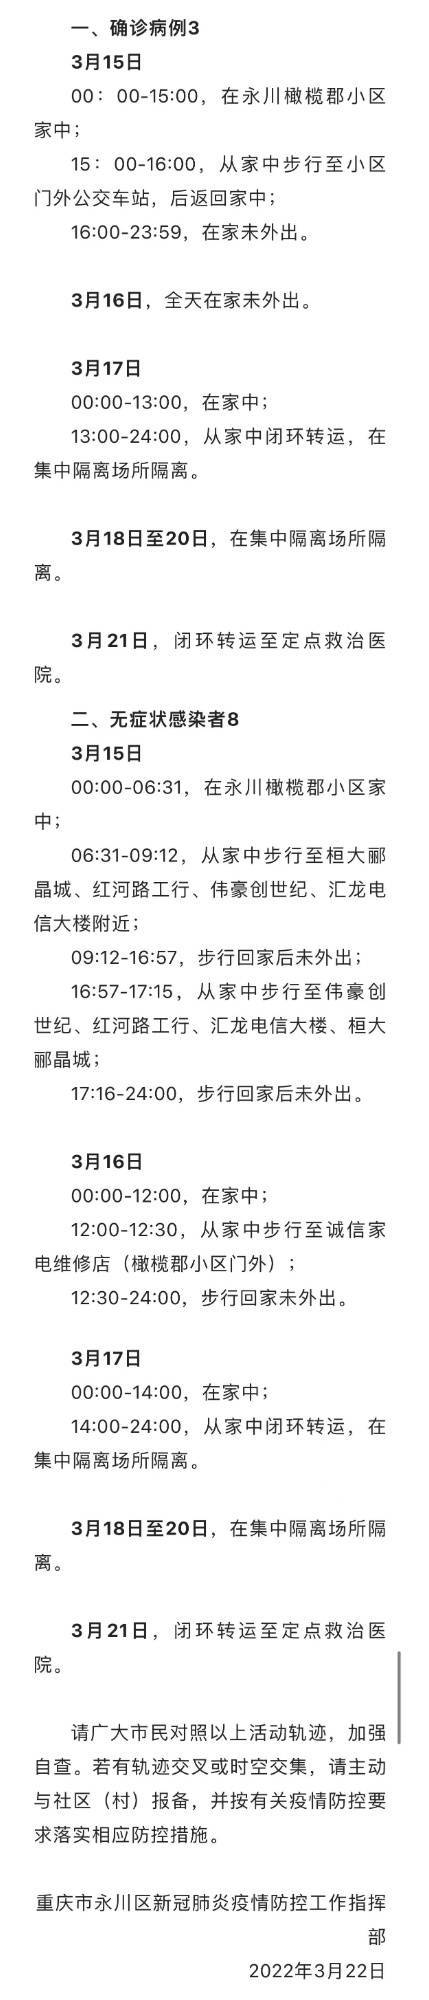 苏佳|重庆市永川区公布1例确诊病例和1例无症状感染者主要活动轨迹